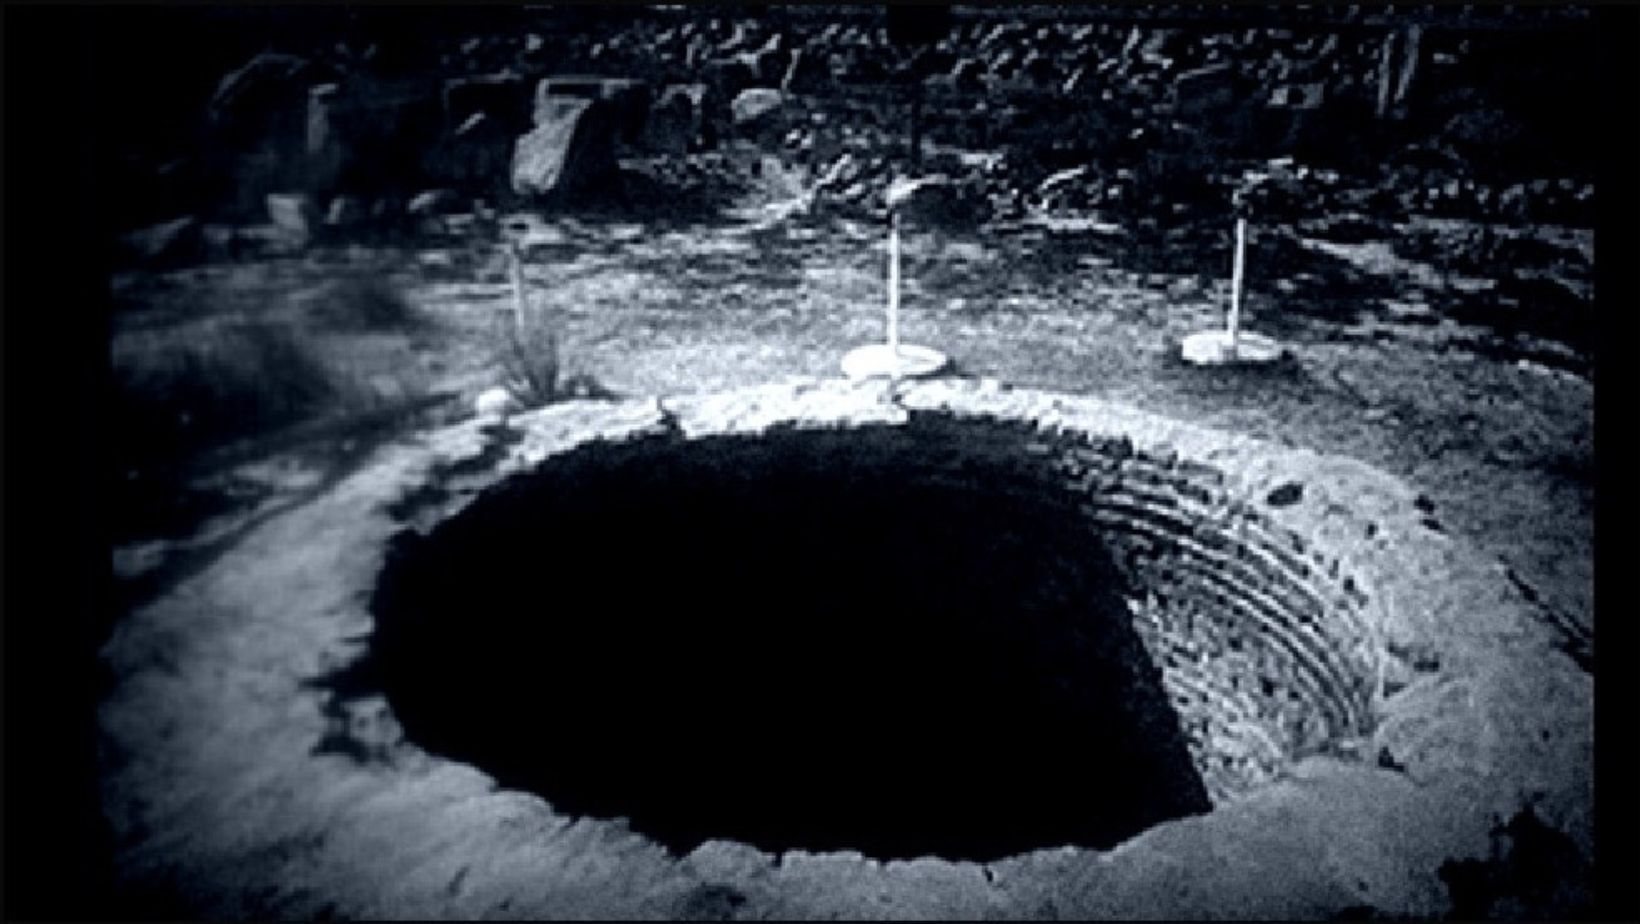 Mel's Hole Mystery Washington